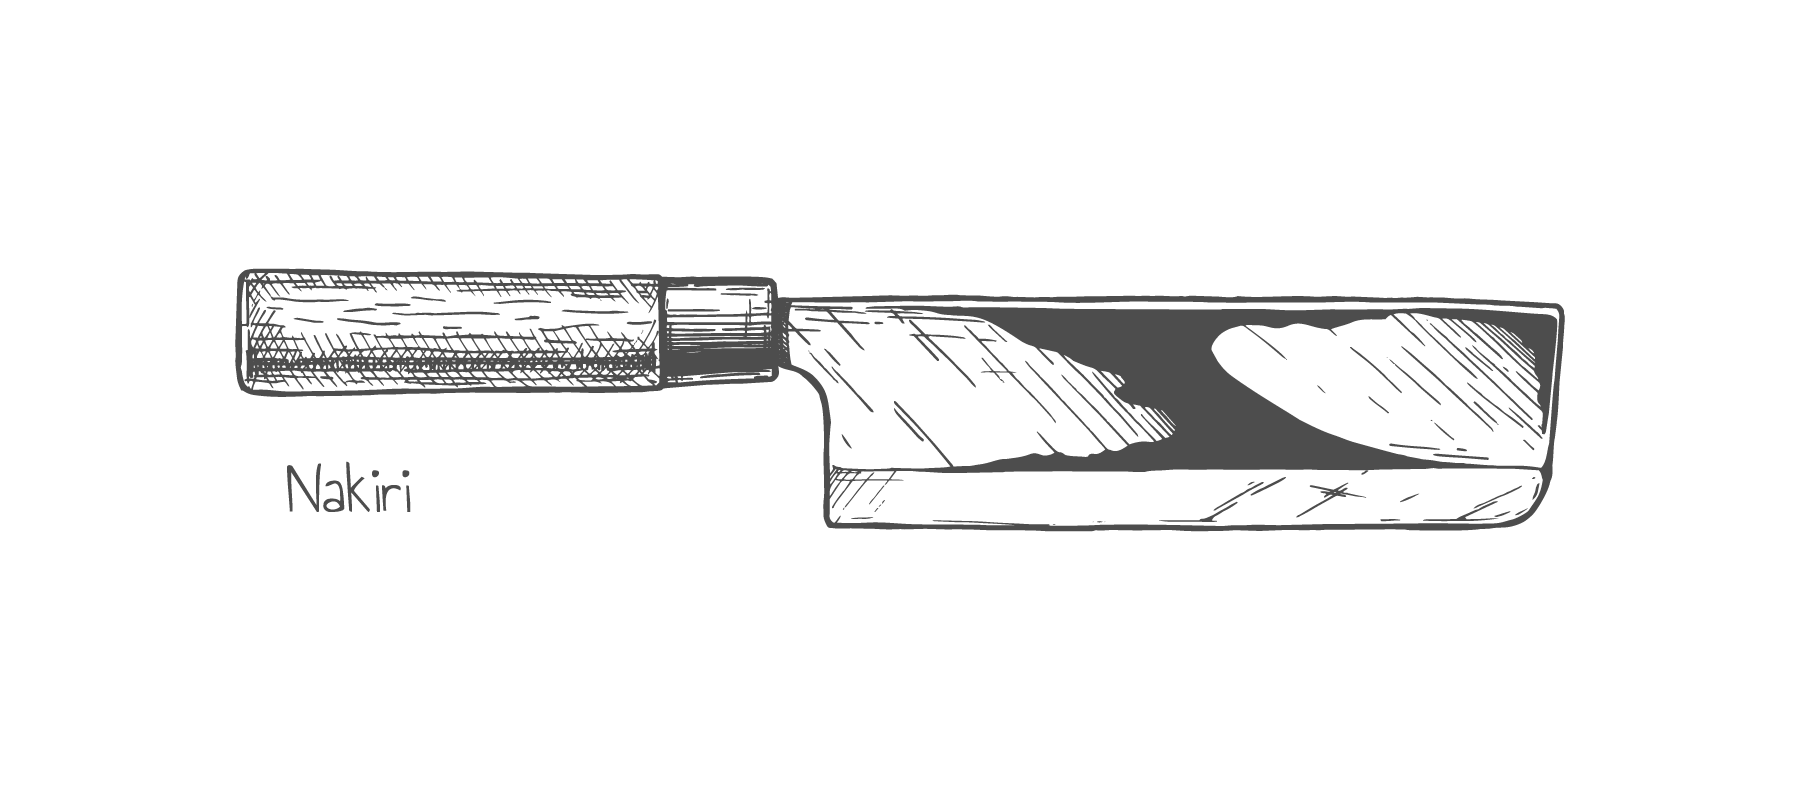 Nakiri Japanese knife shape